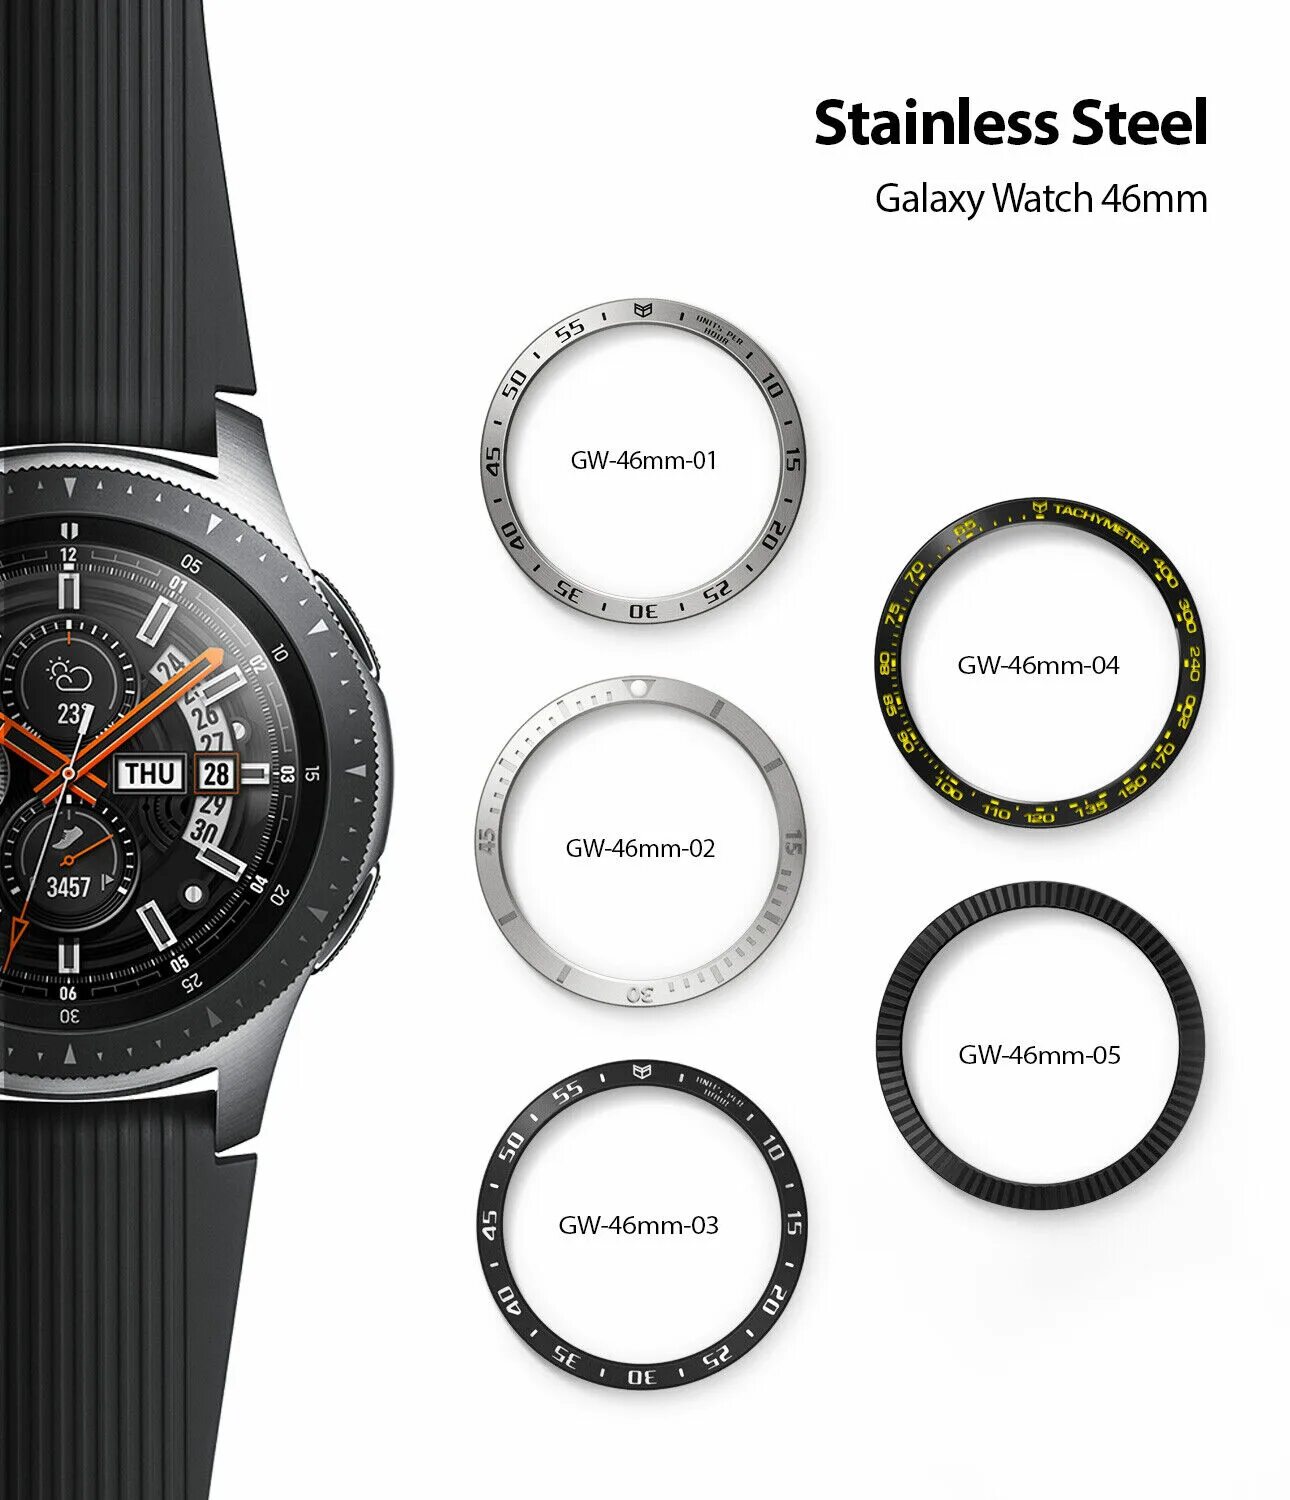 Samsung Galaxy watch 46mm Battery. Samsung Galaxy watch 46mm навигатор. Безель Samsung Galaxy watch. Циферблаты для Samsung Galaxy watch 46mm.